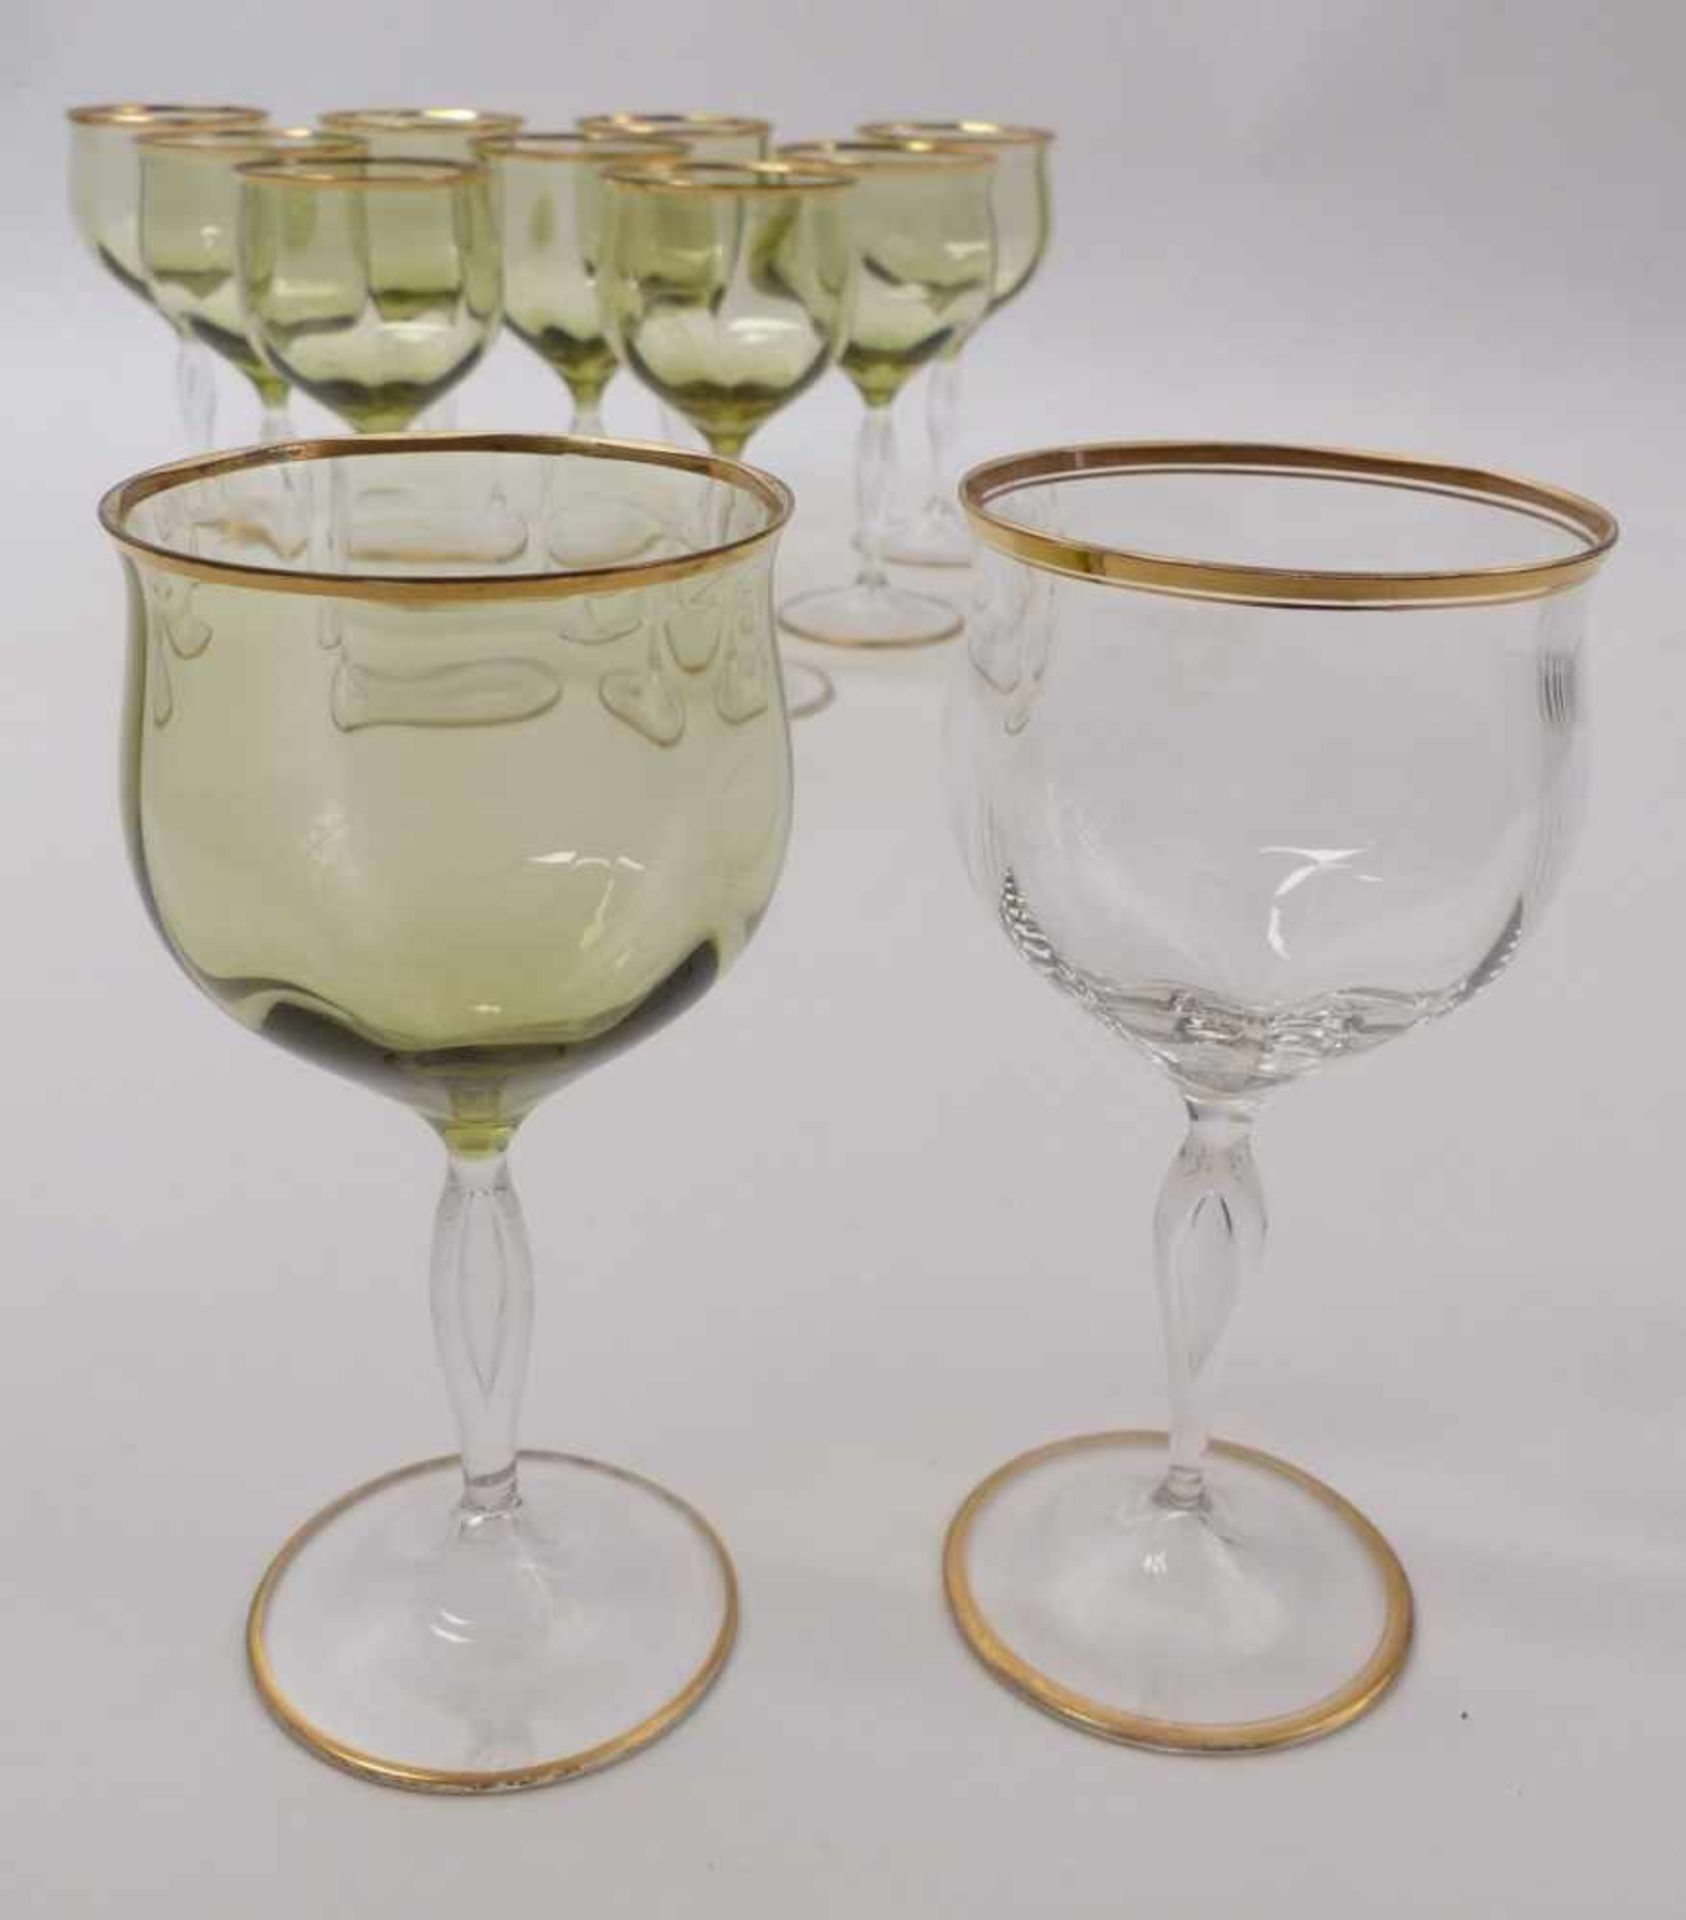 Eleven wine or aperitif glasses - Image 3 of 3